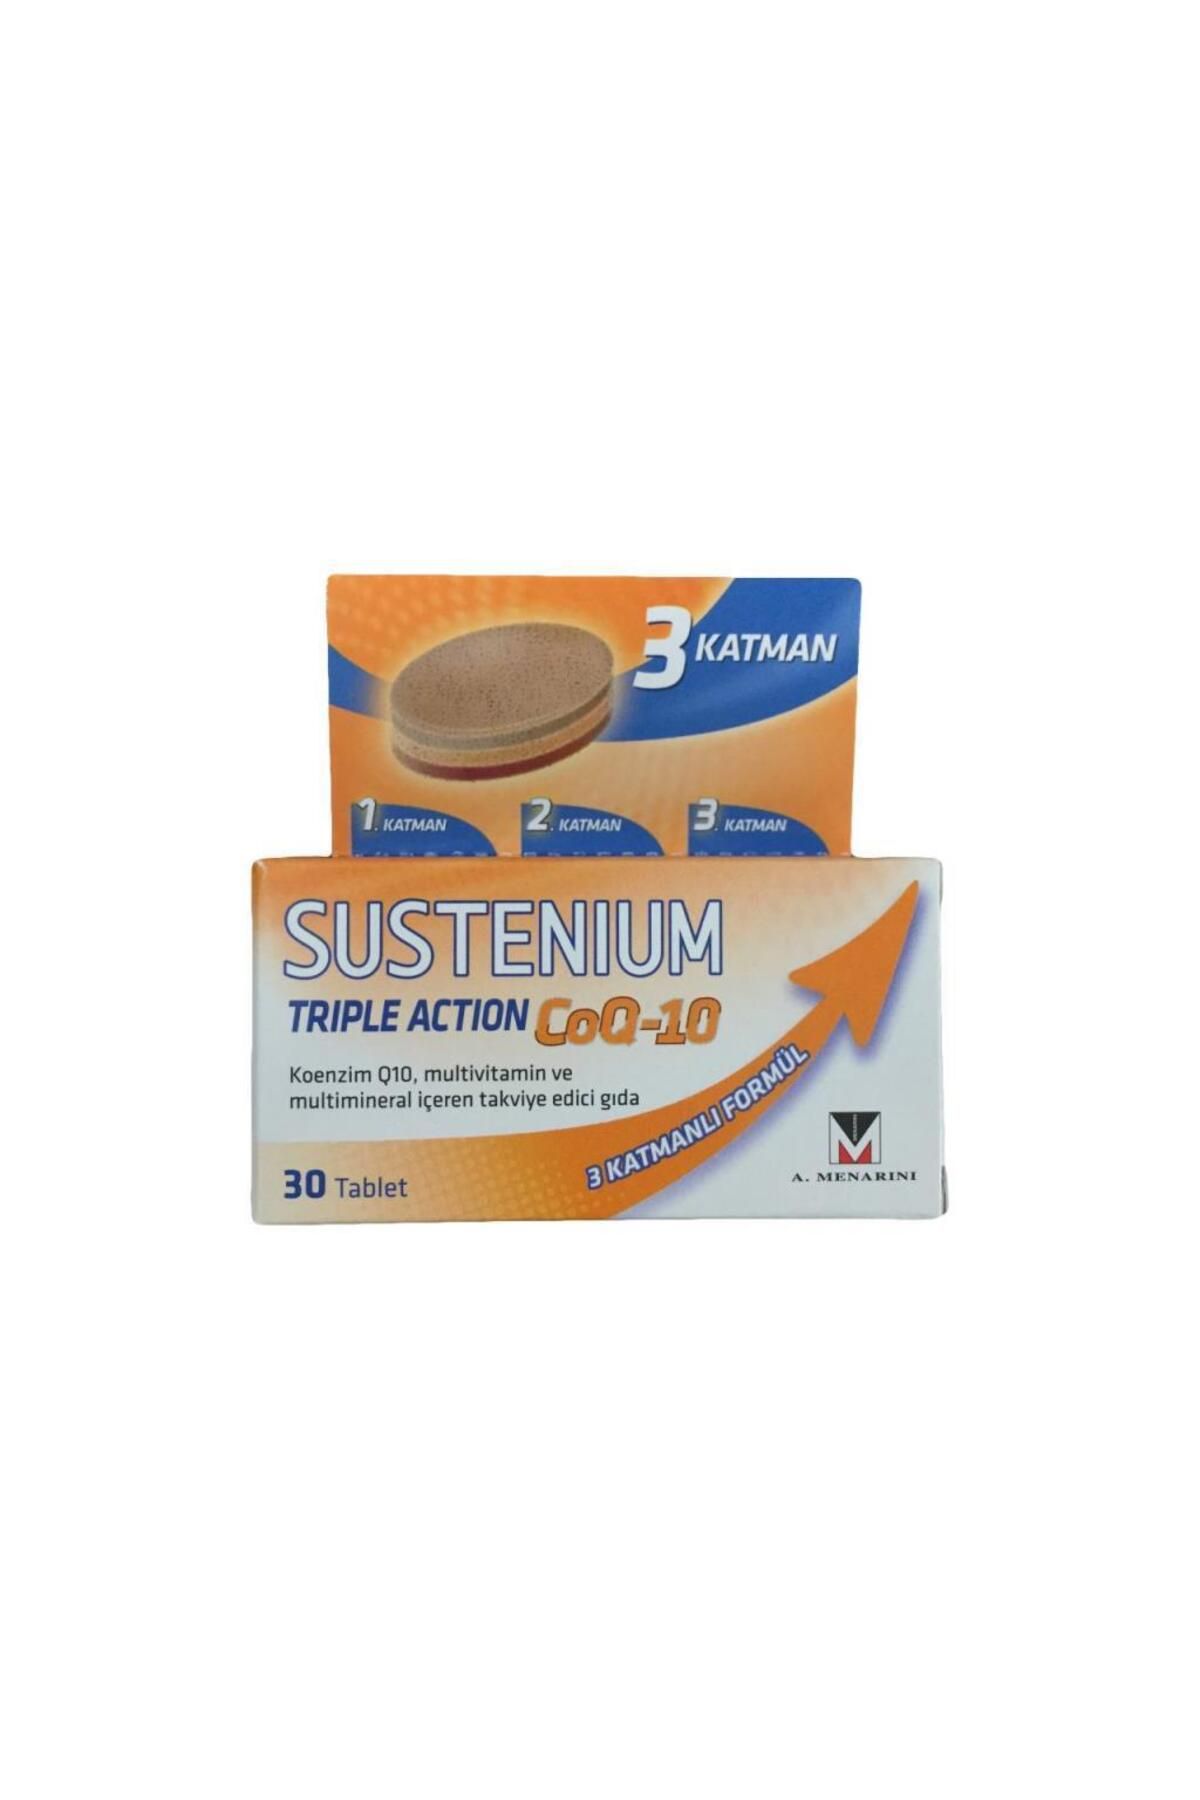 Sustenium Triple Action Coq-10 30 Tablet